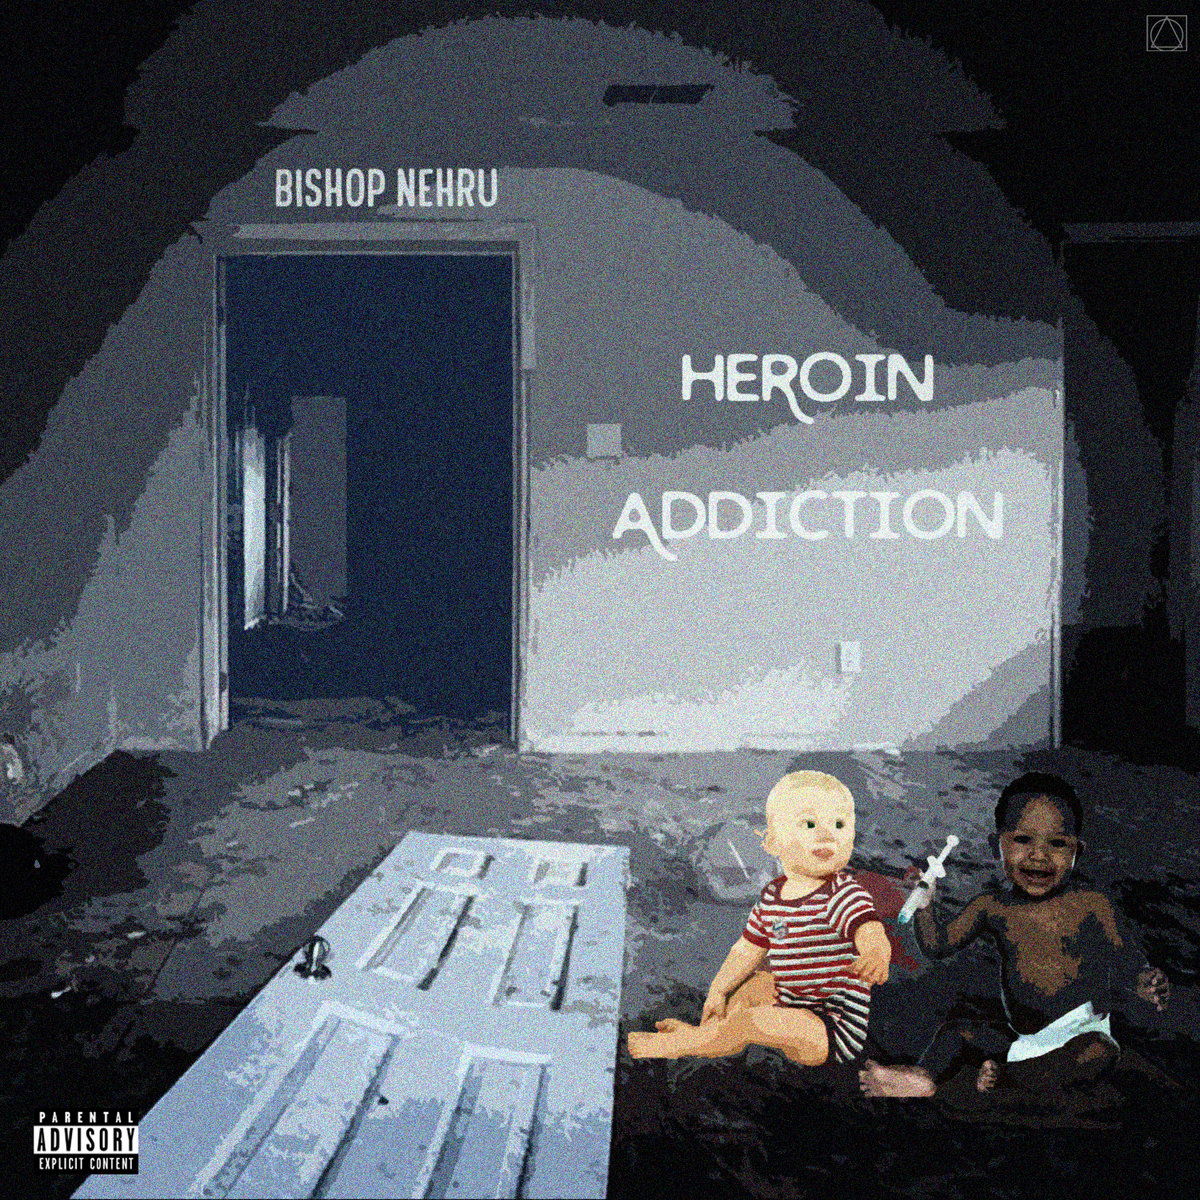 Heroin_addiction_bishop_nehru